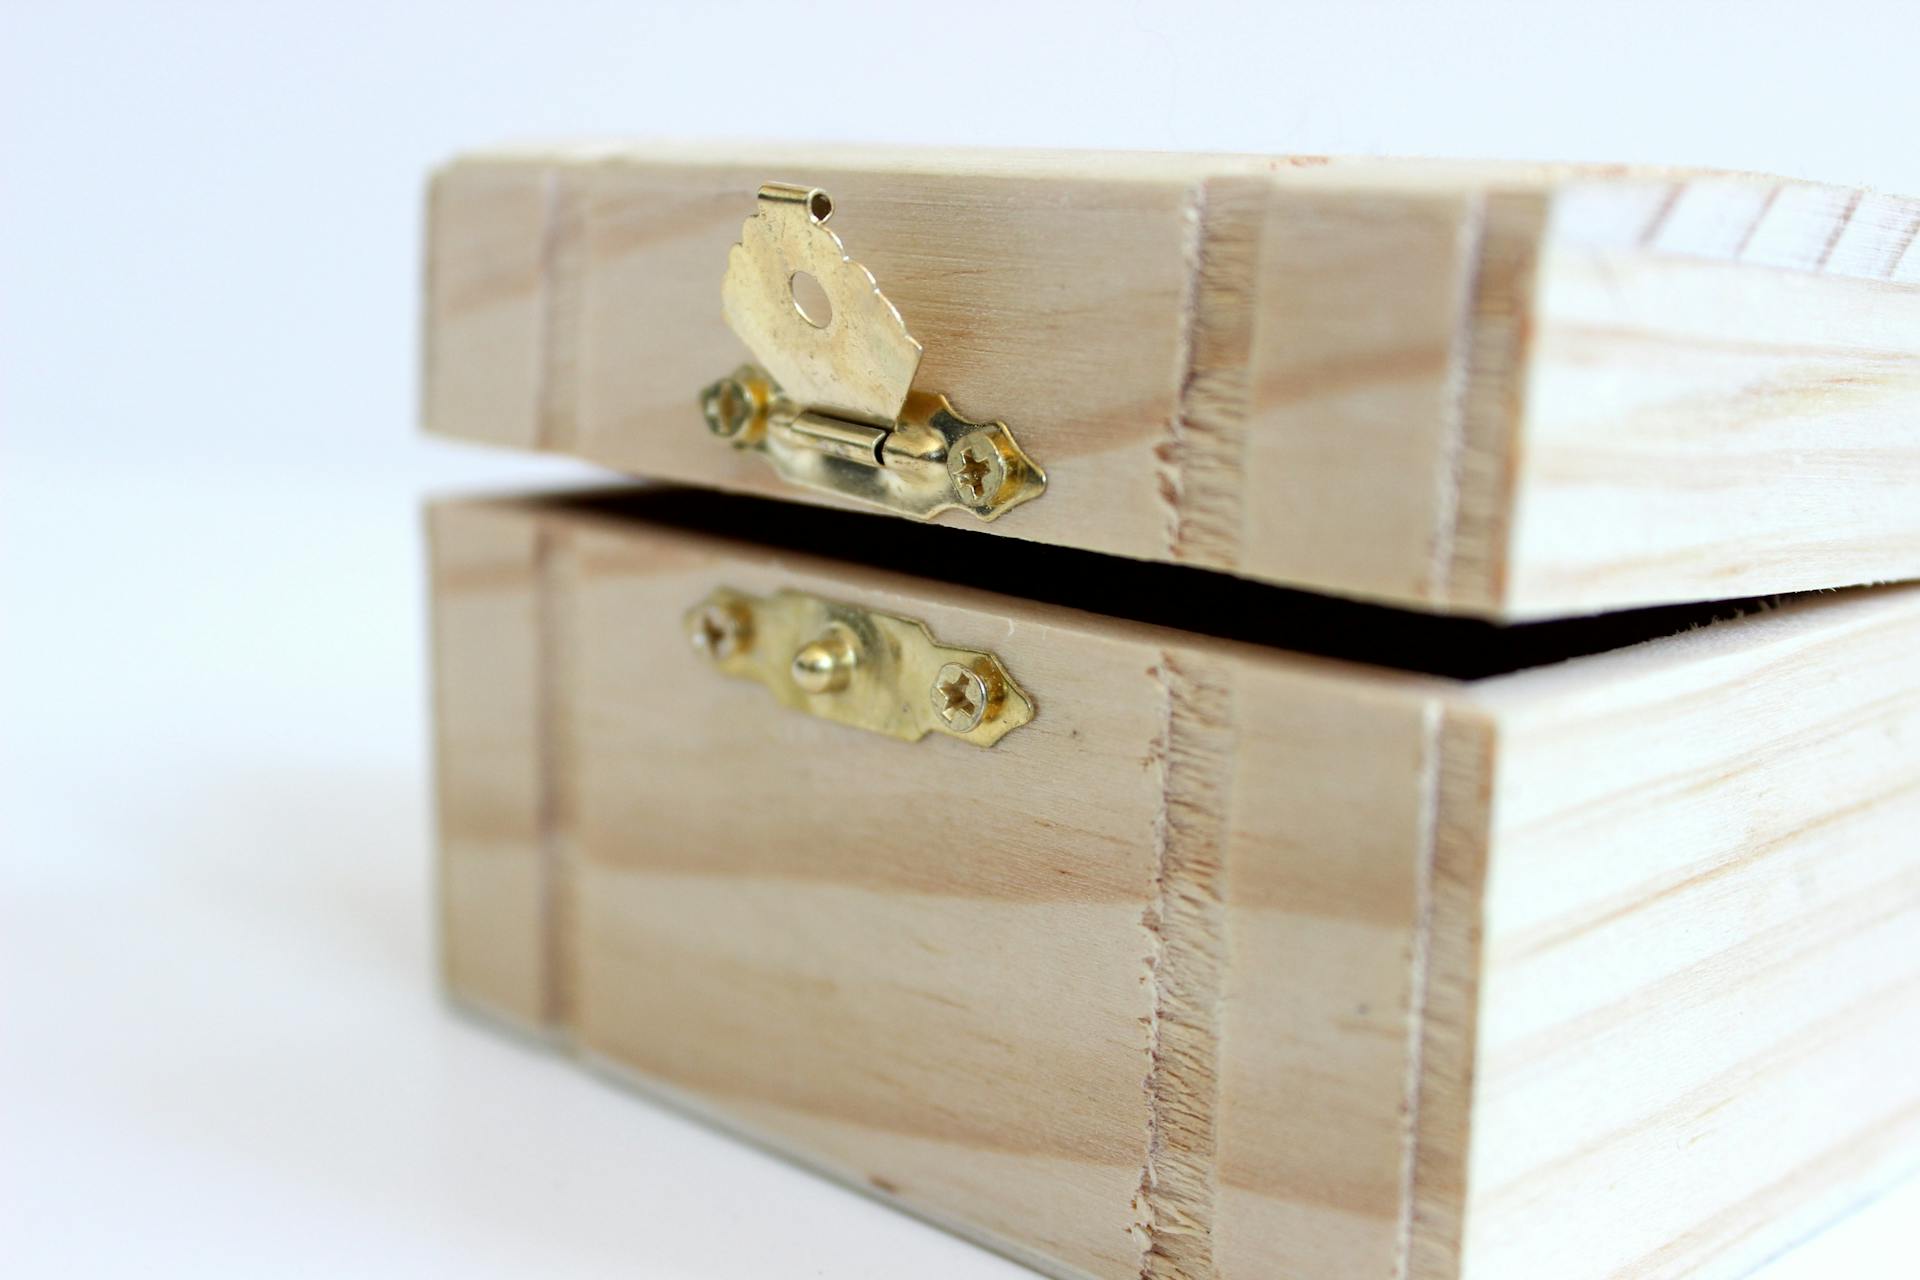 A wooden box | Source: Pexels